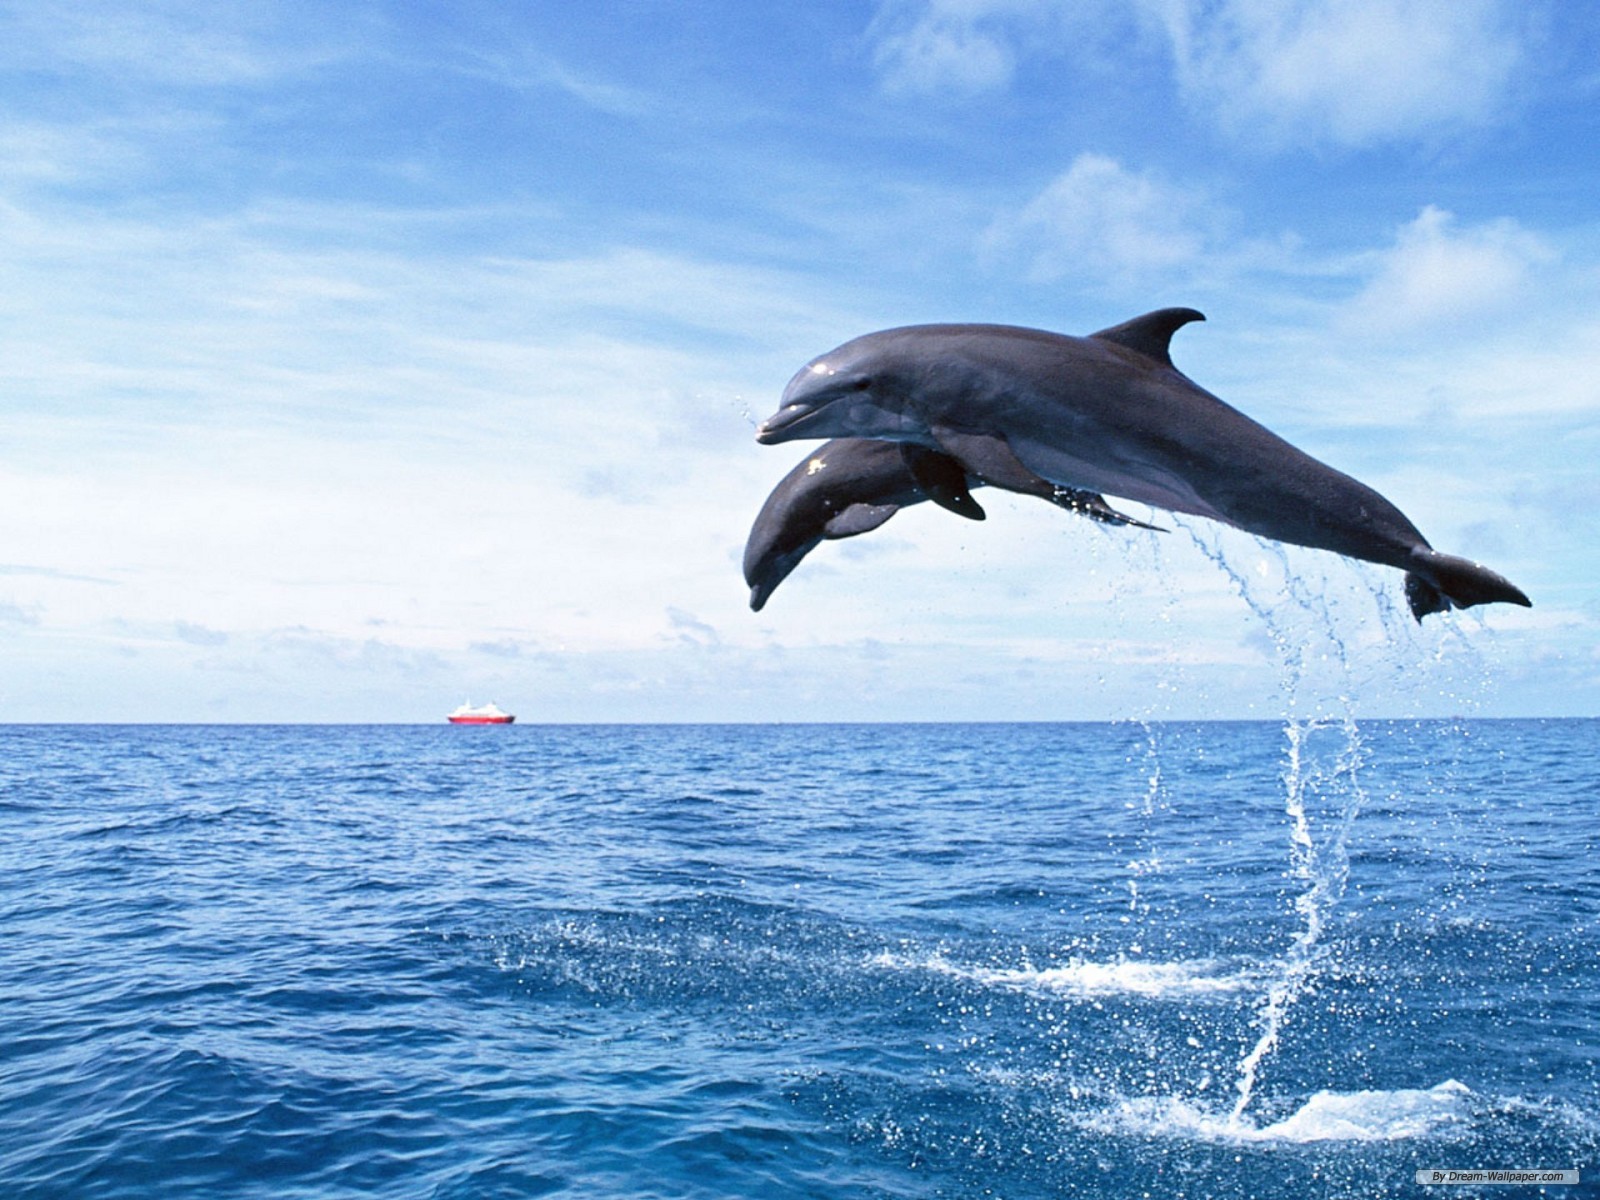 fondos de pantalla de delfines hd,delfín,delfín nariz de botella común,delfín nariz de botella,mamífero marino,saltando